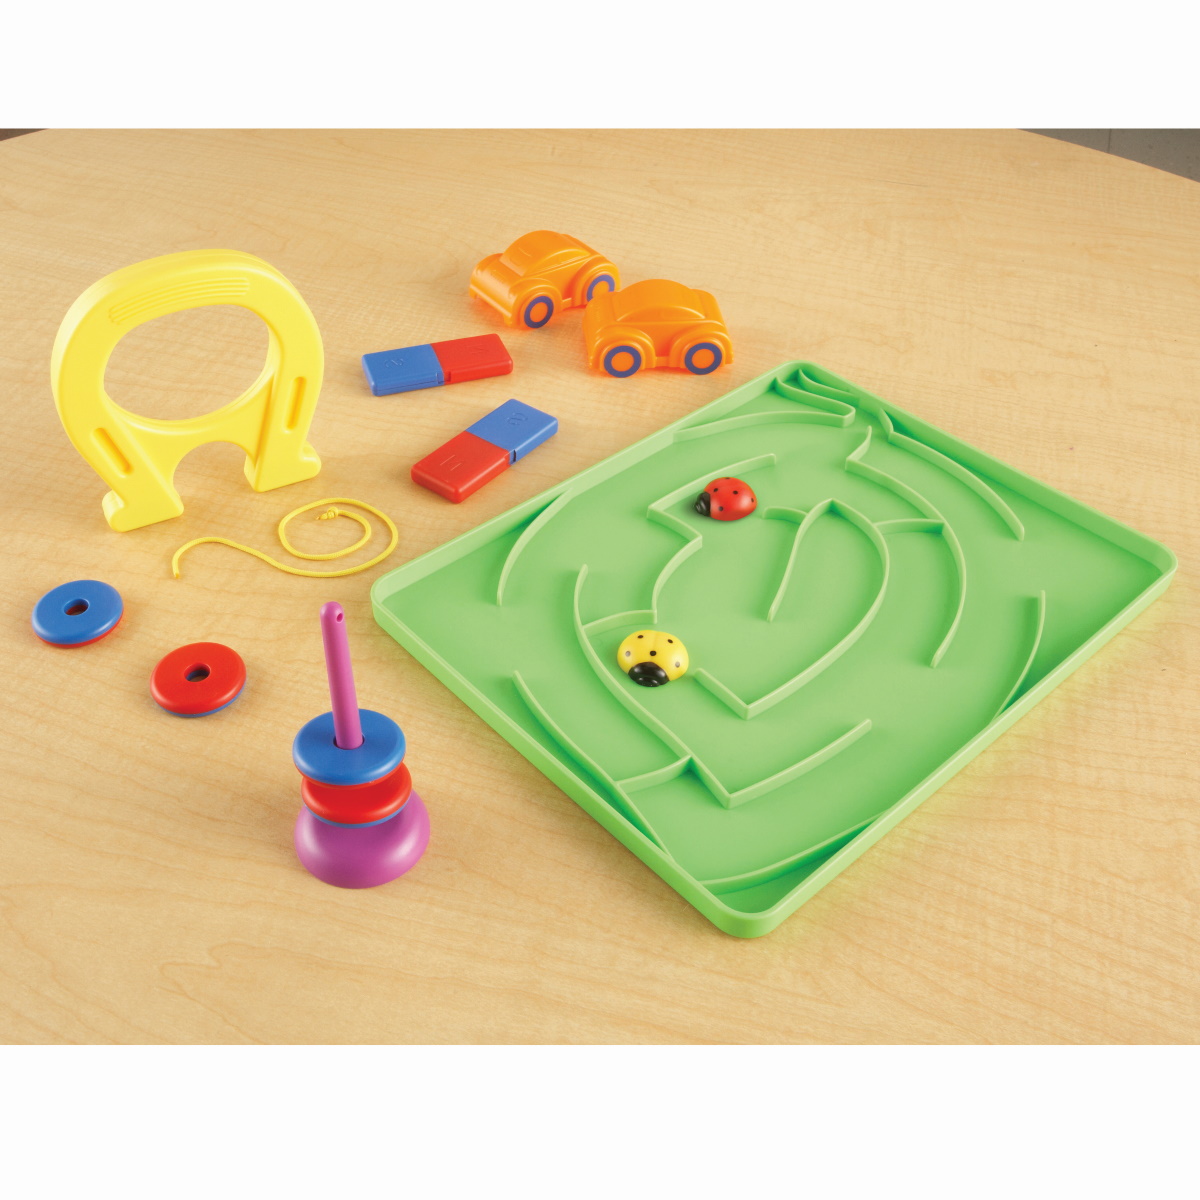 картинка  Развивающая игрушка Магнетизм. СТЕМ (24 элемента) Learning Resources, LER2833 от магазина ДетсадЯр